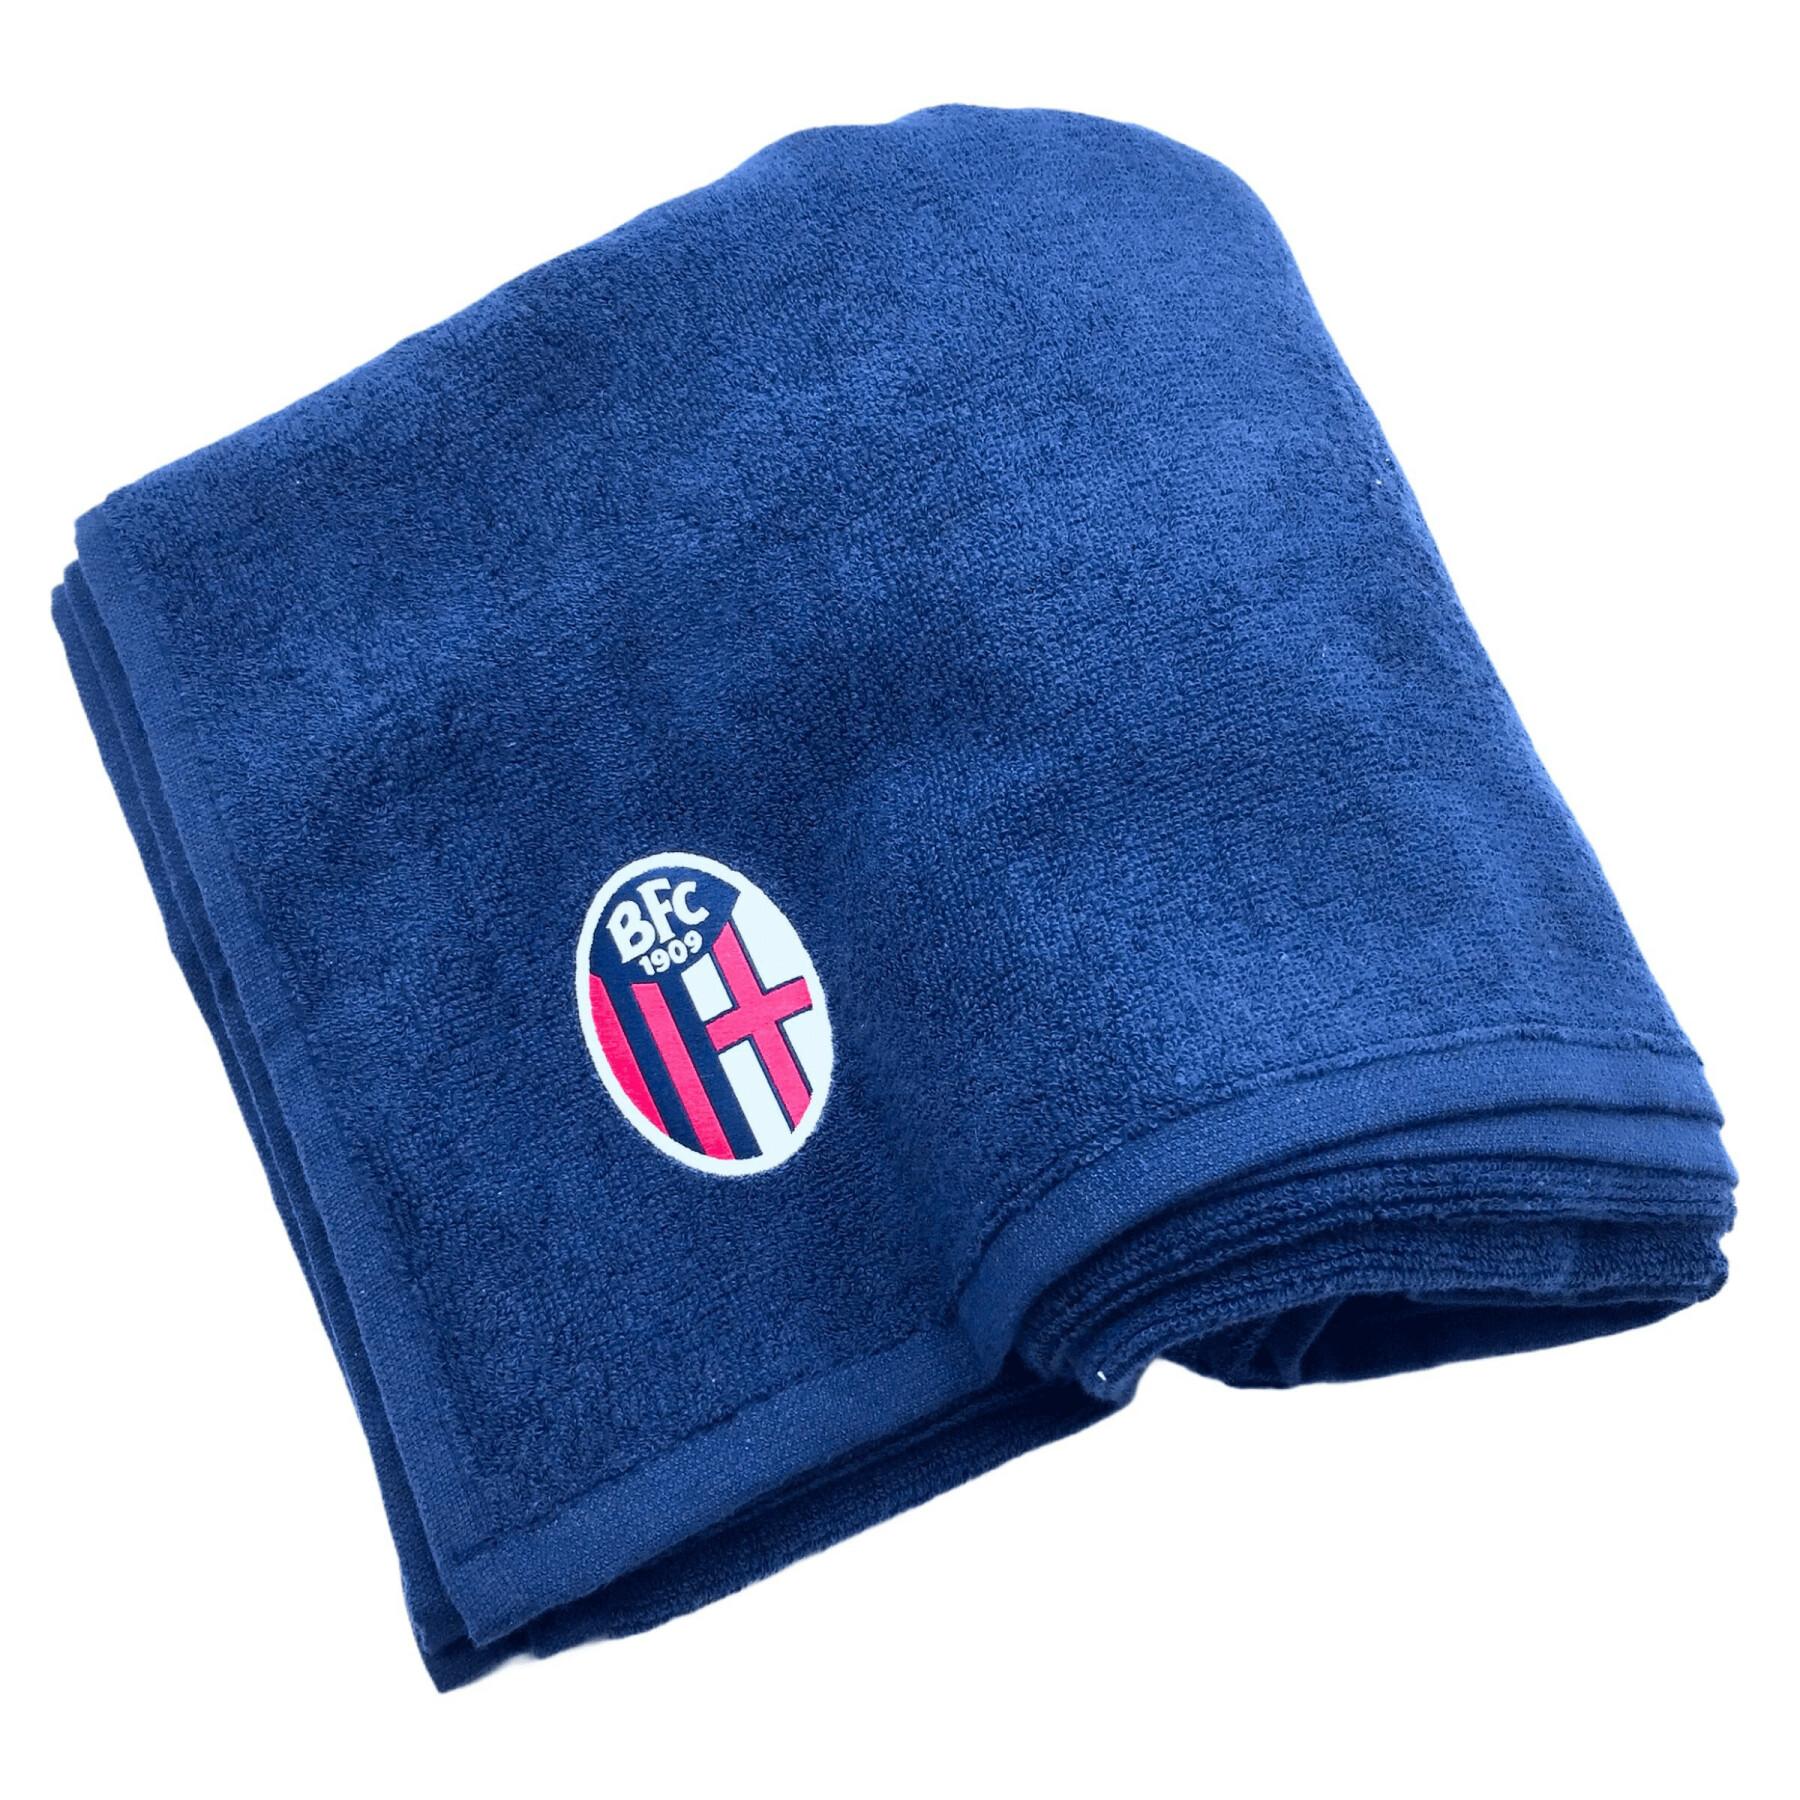 Towel Bologne 2020/21 Telo